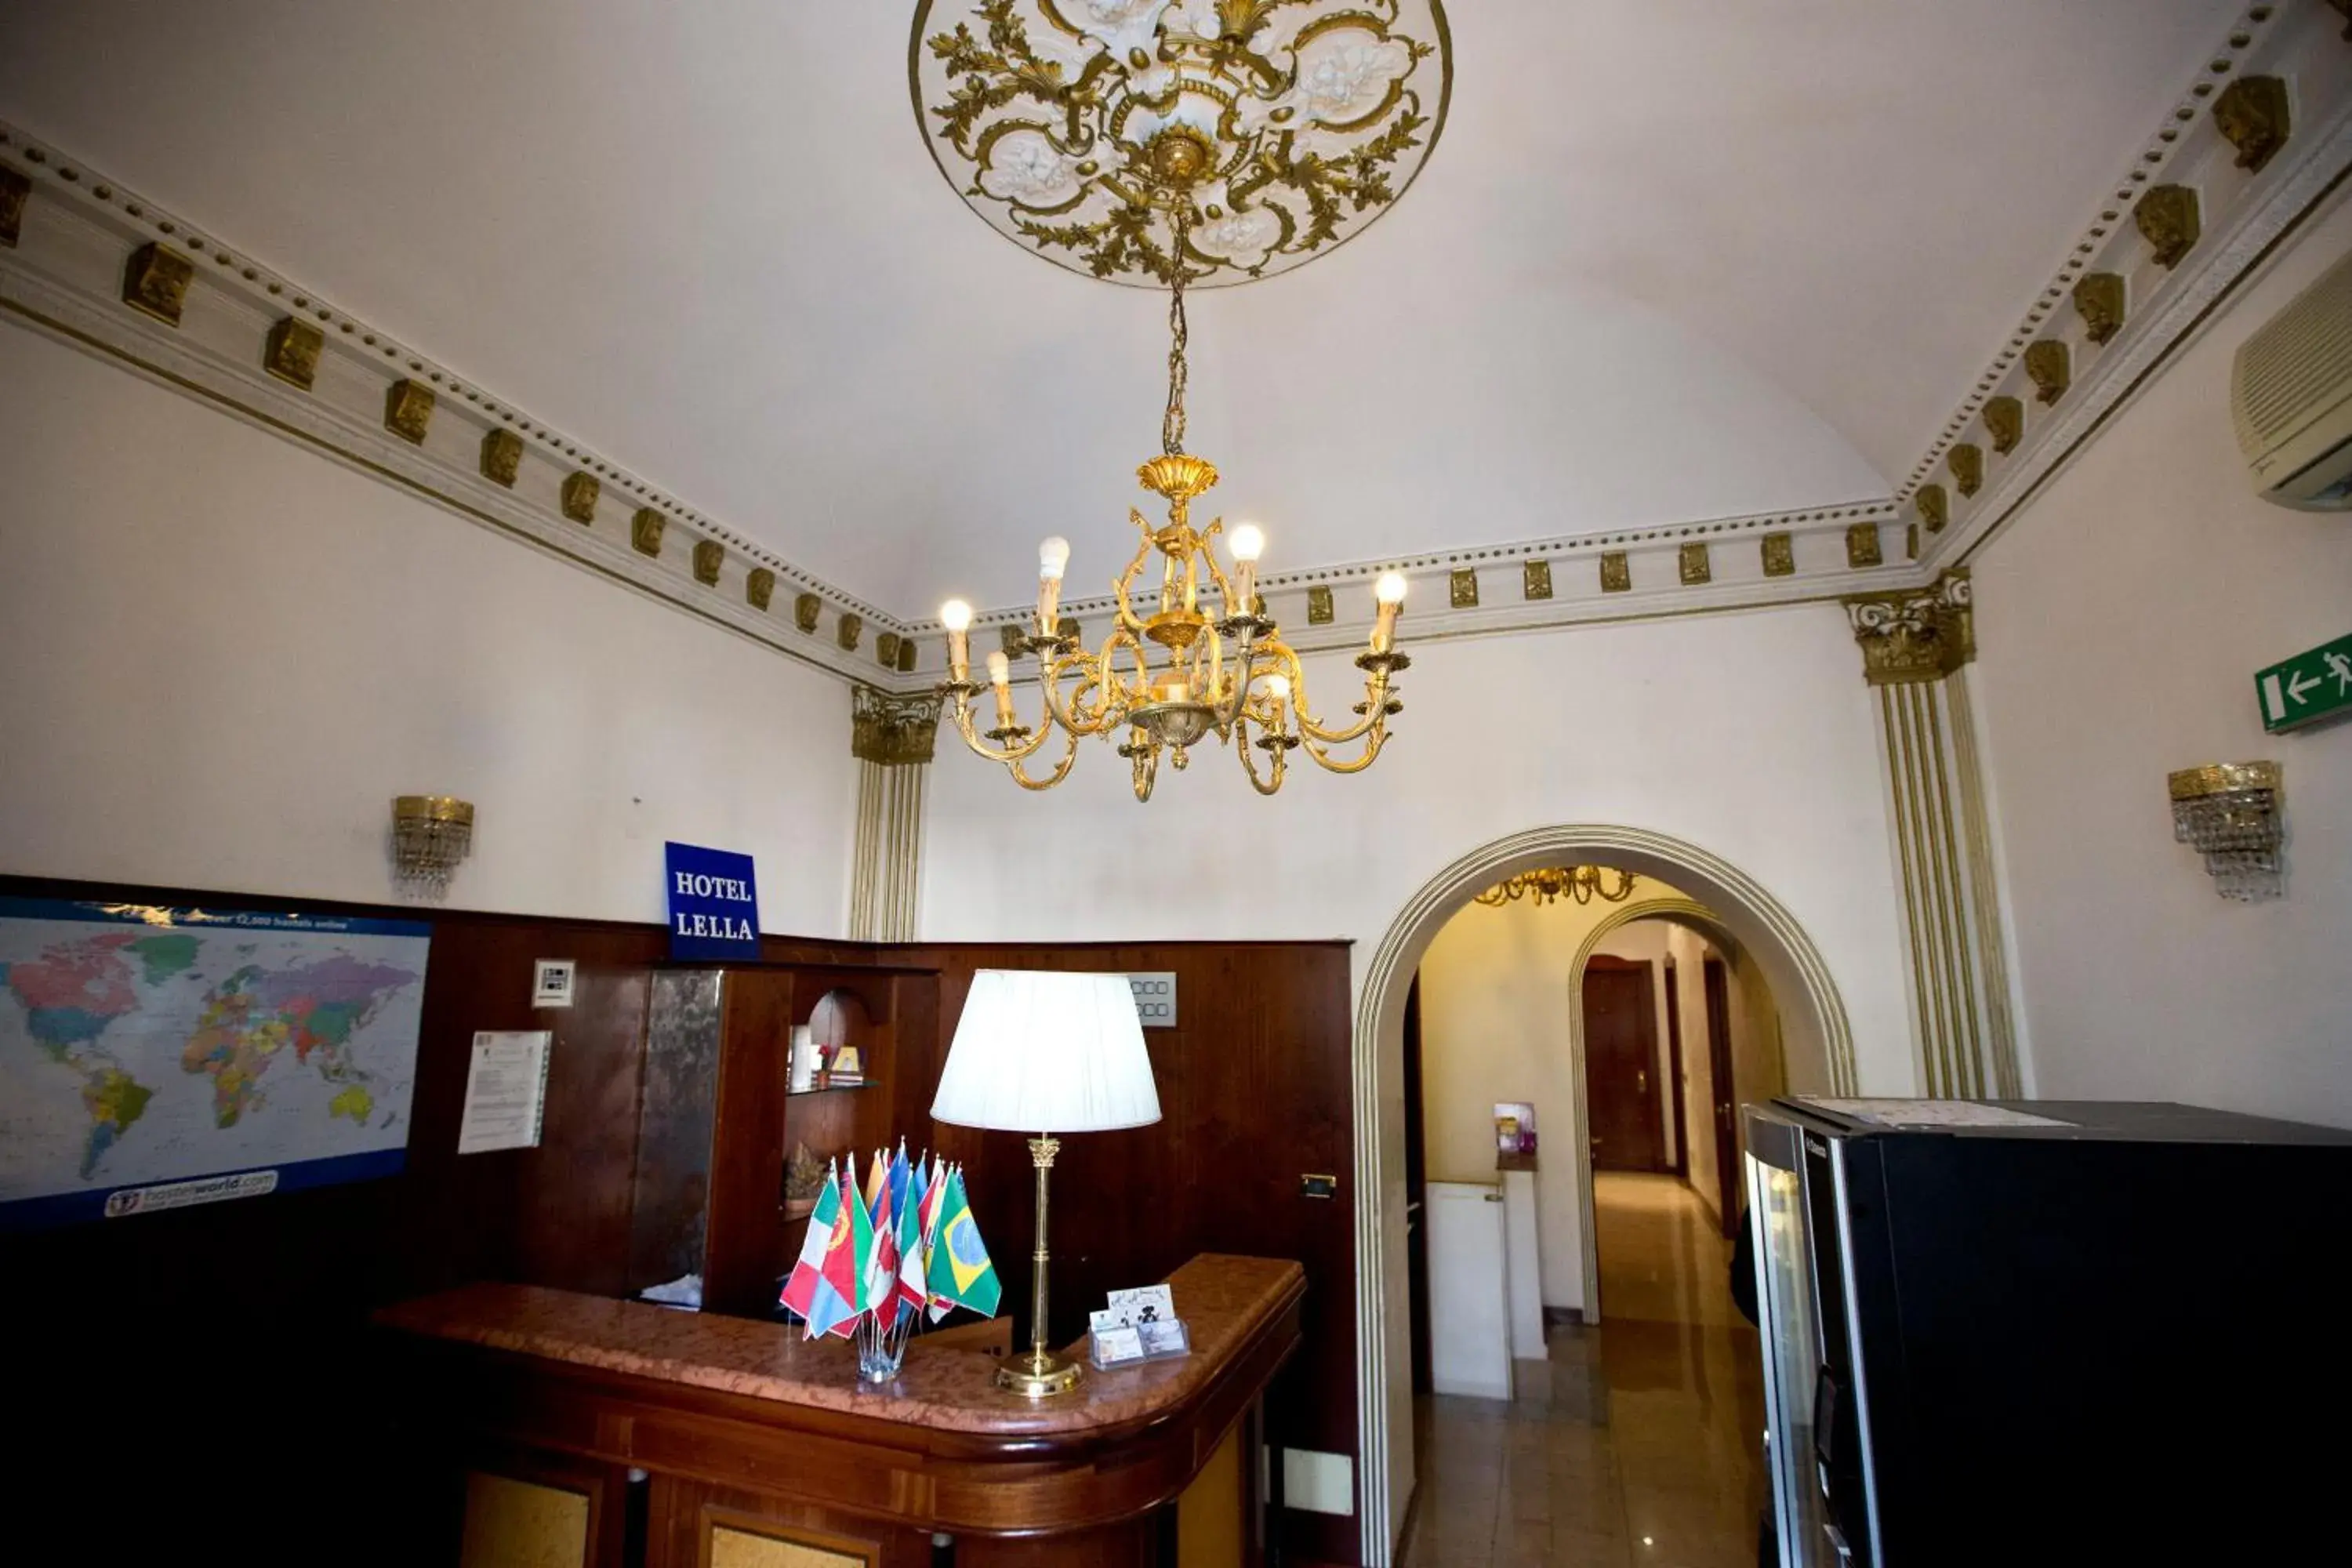 Lobby or reception, Lobby/Reception in Hotel Lella